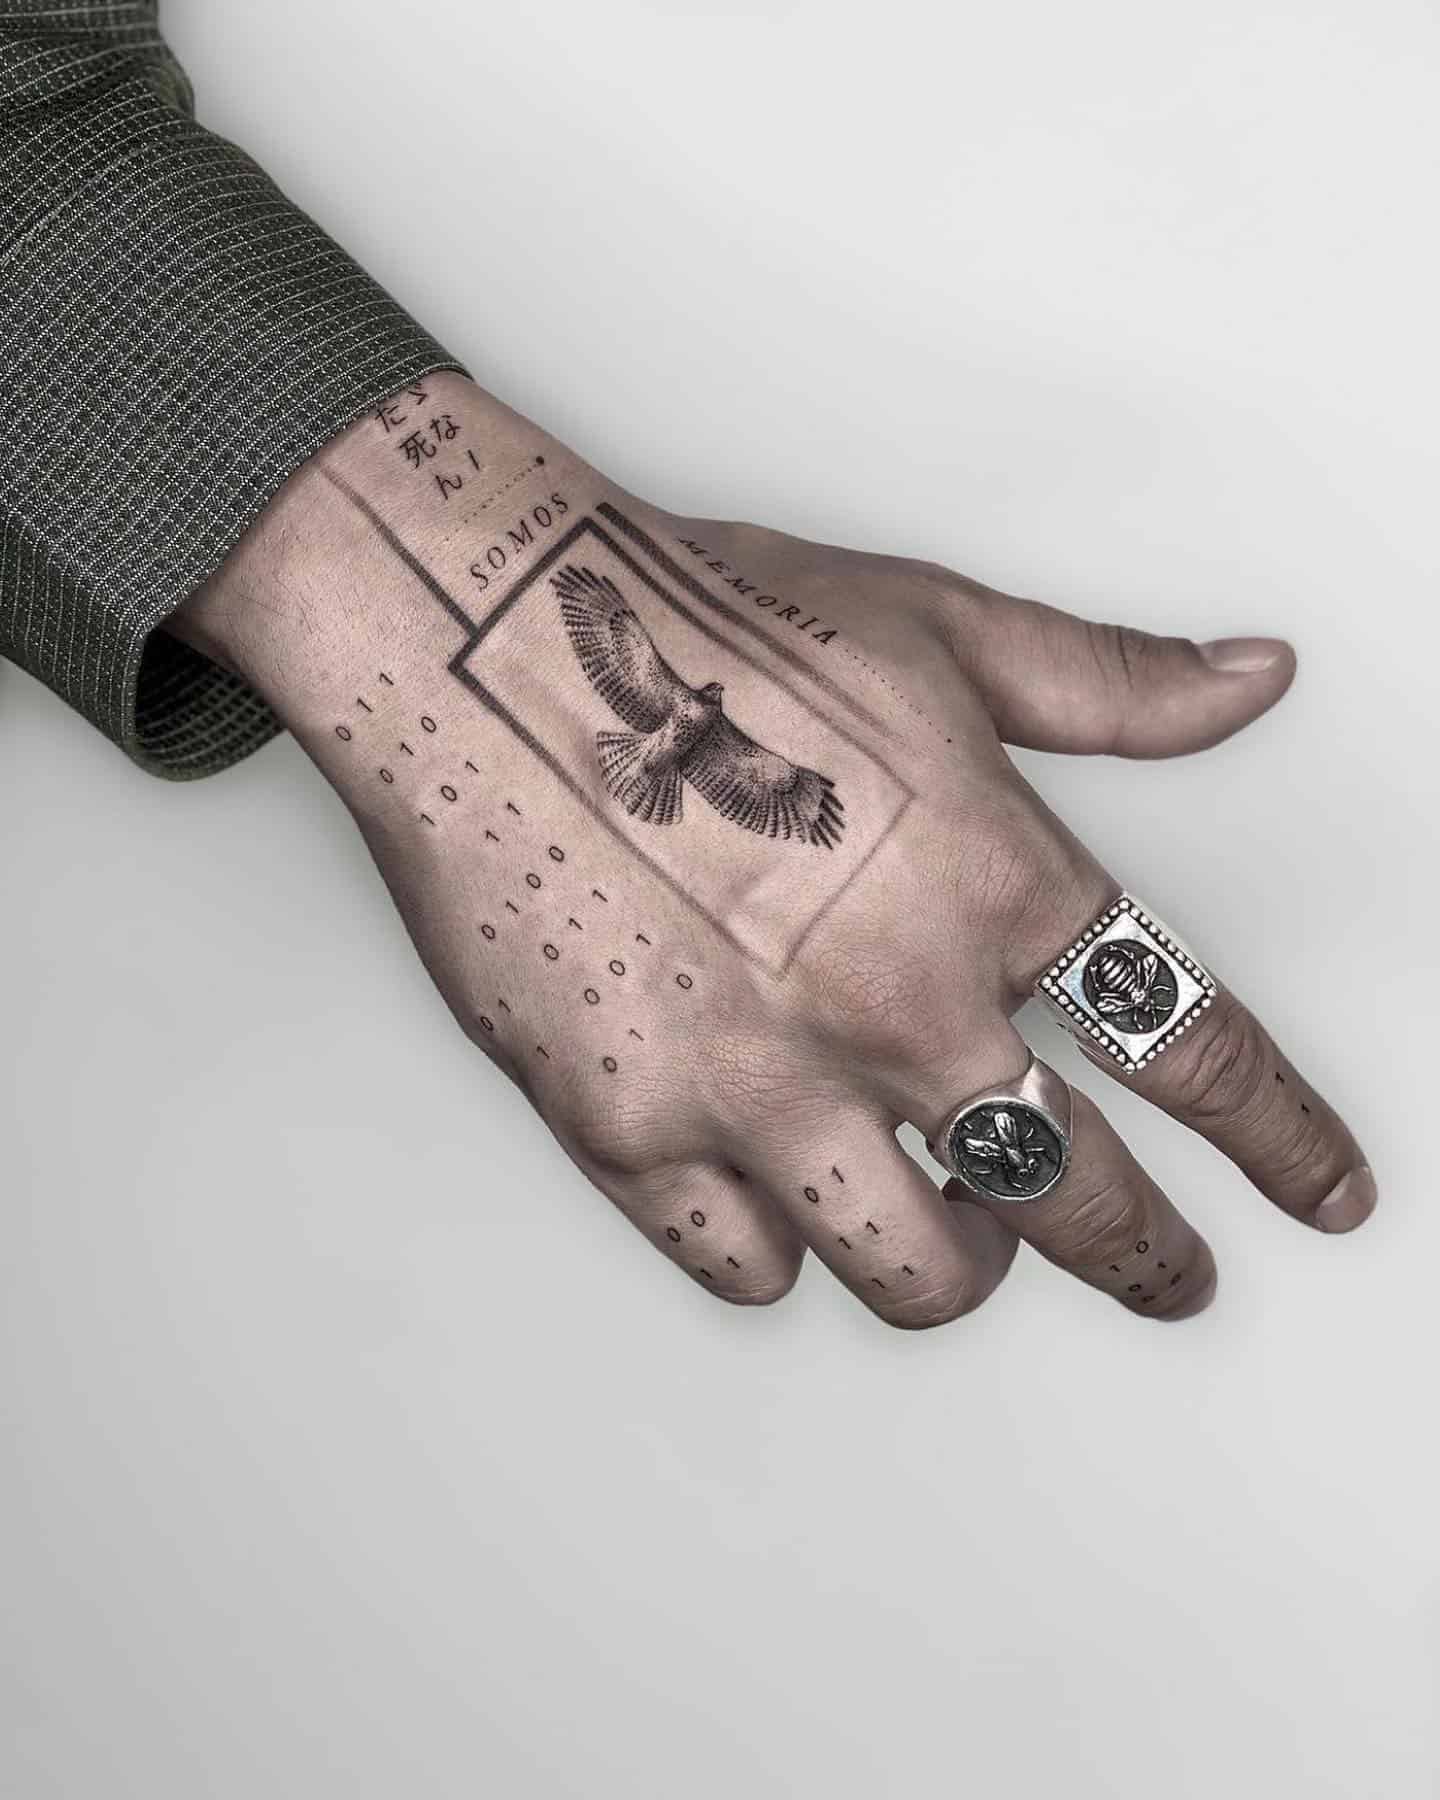 Top 63 Little Hand Tattoo Ideas 2022 Inspiration Guide